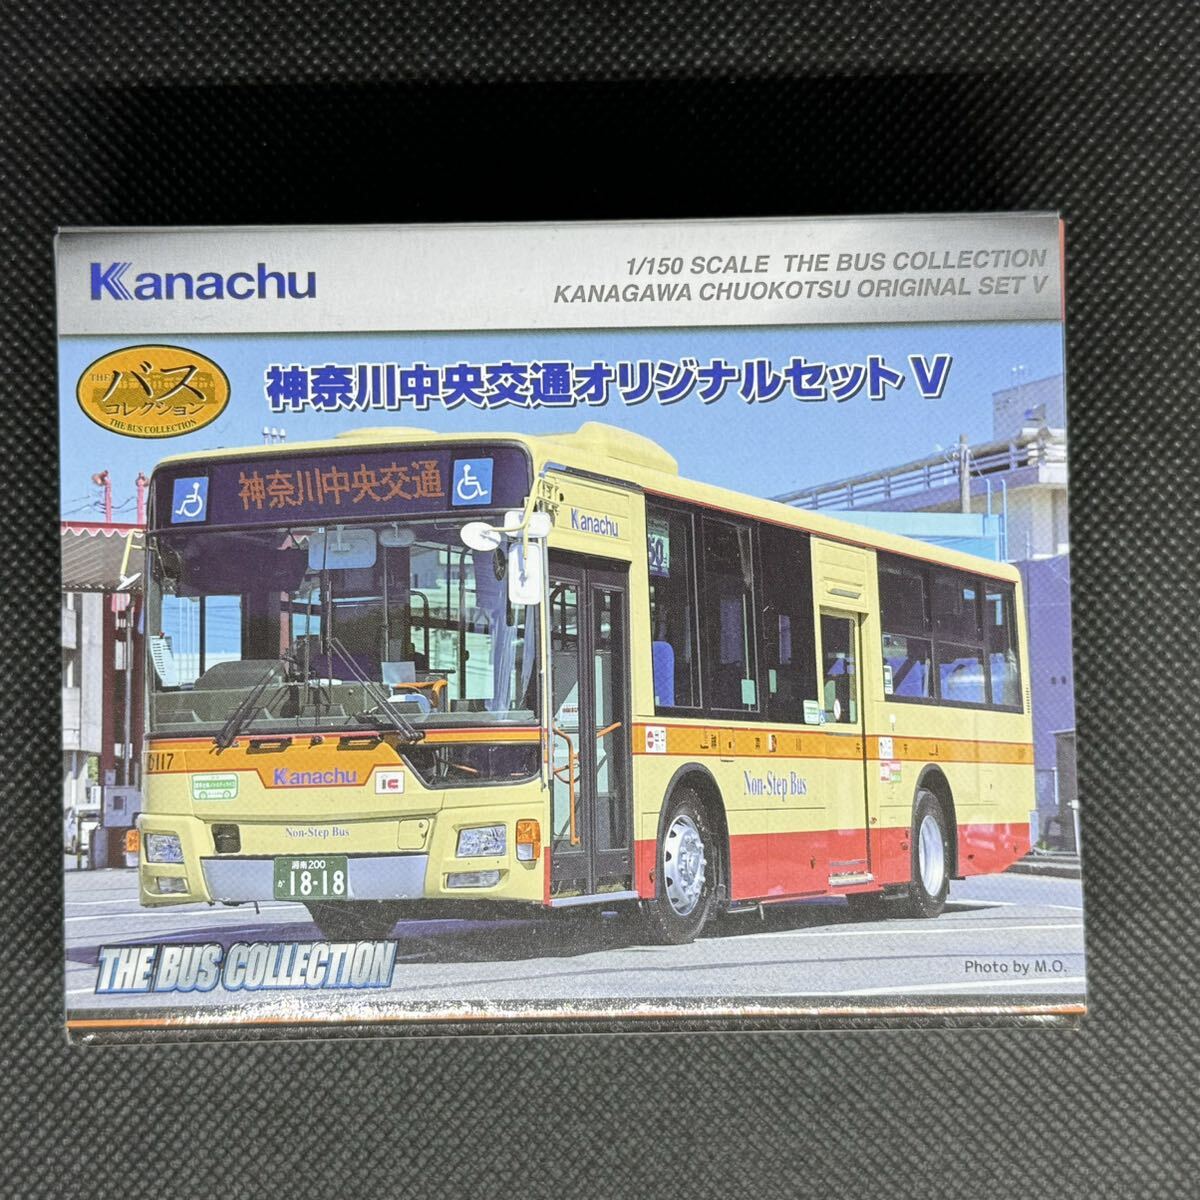 バスコレクション 神奈川中央交通 オリジナルセットⅤ 神奈中 三菱ふそう エアロスターの画像1